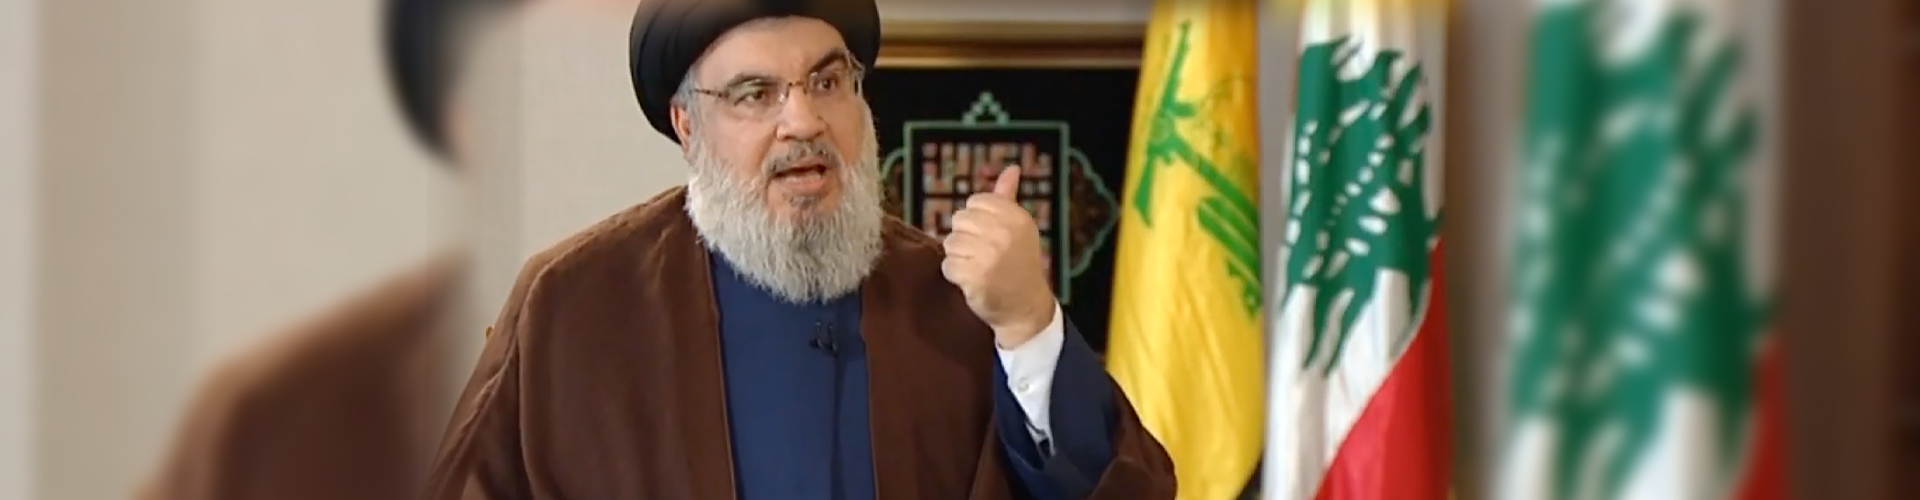 Secretario general de Hezbolá Nasrallah: Todos los campos de gas en alta mar pertenecientes a Israel están dentro de nuestro alcance; traeremos combustible de Irán si el gobierno libanés lo pide; los israelíes muy pronto huirán de su país